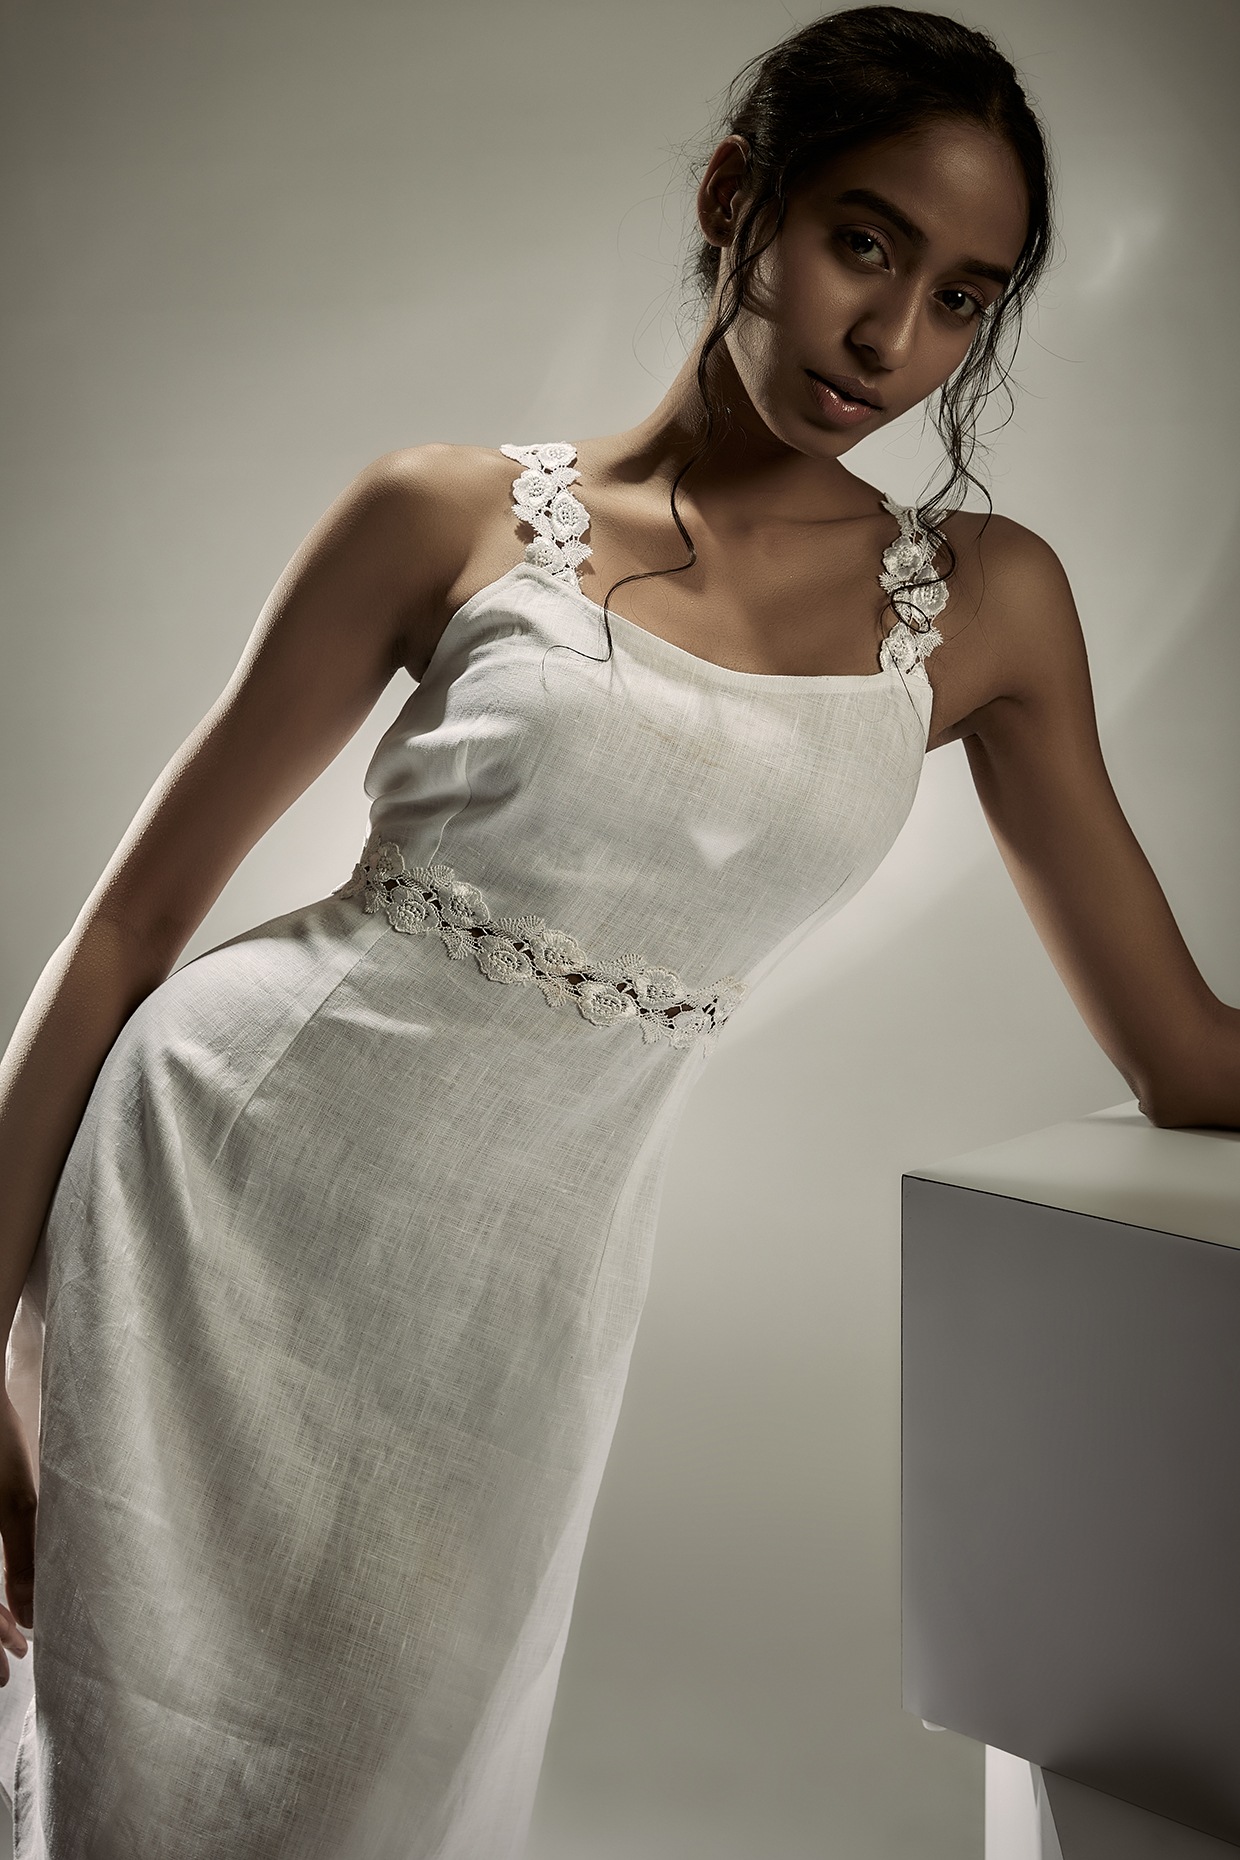 Top Designer Brands & Labels For Gowns & Dresses | LBB